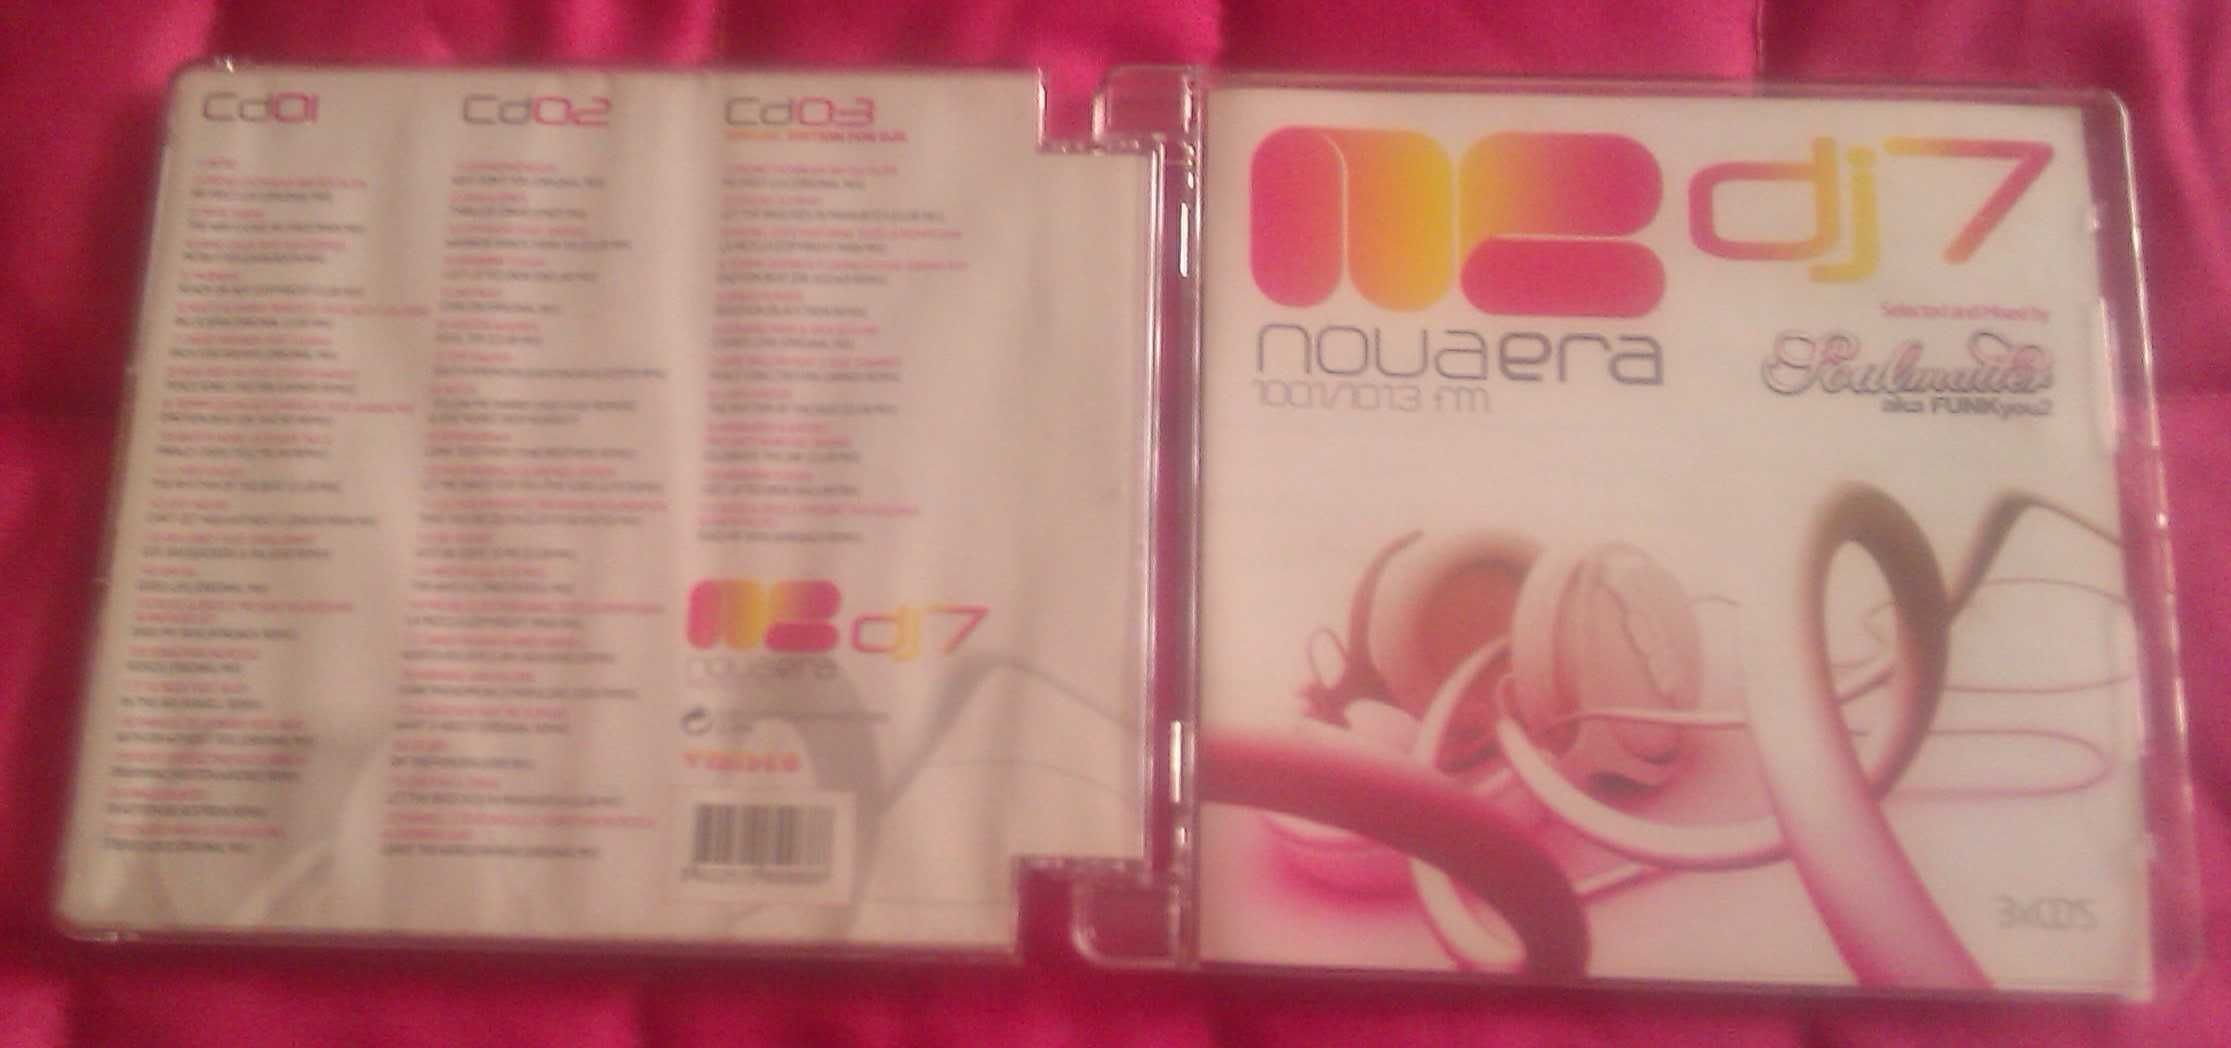 CDS musica Selfish Love E Nova Era Dj 7 (3CDS) 5€ cada como novos.